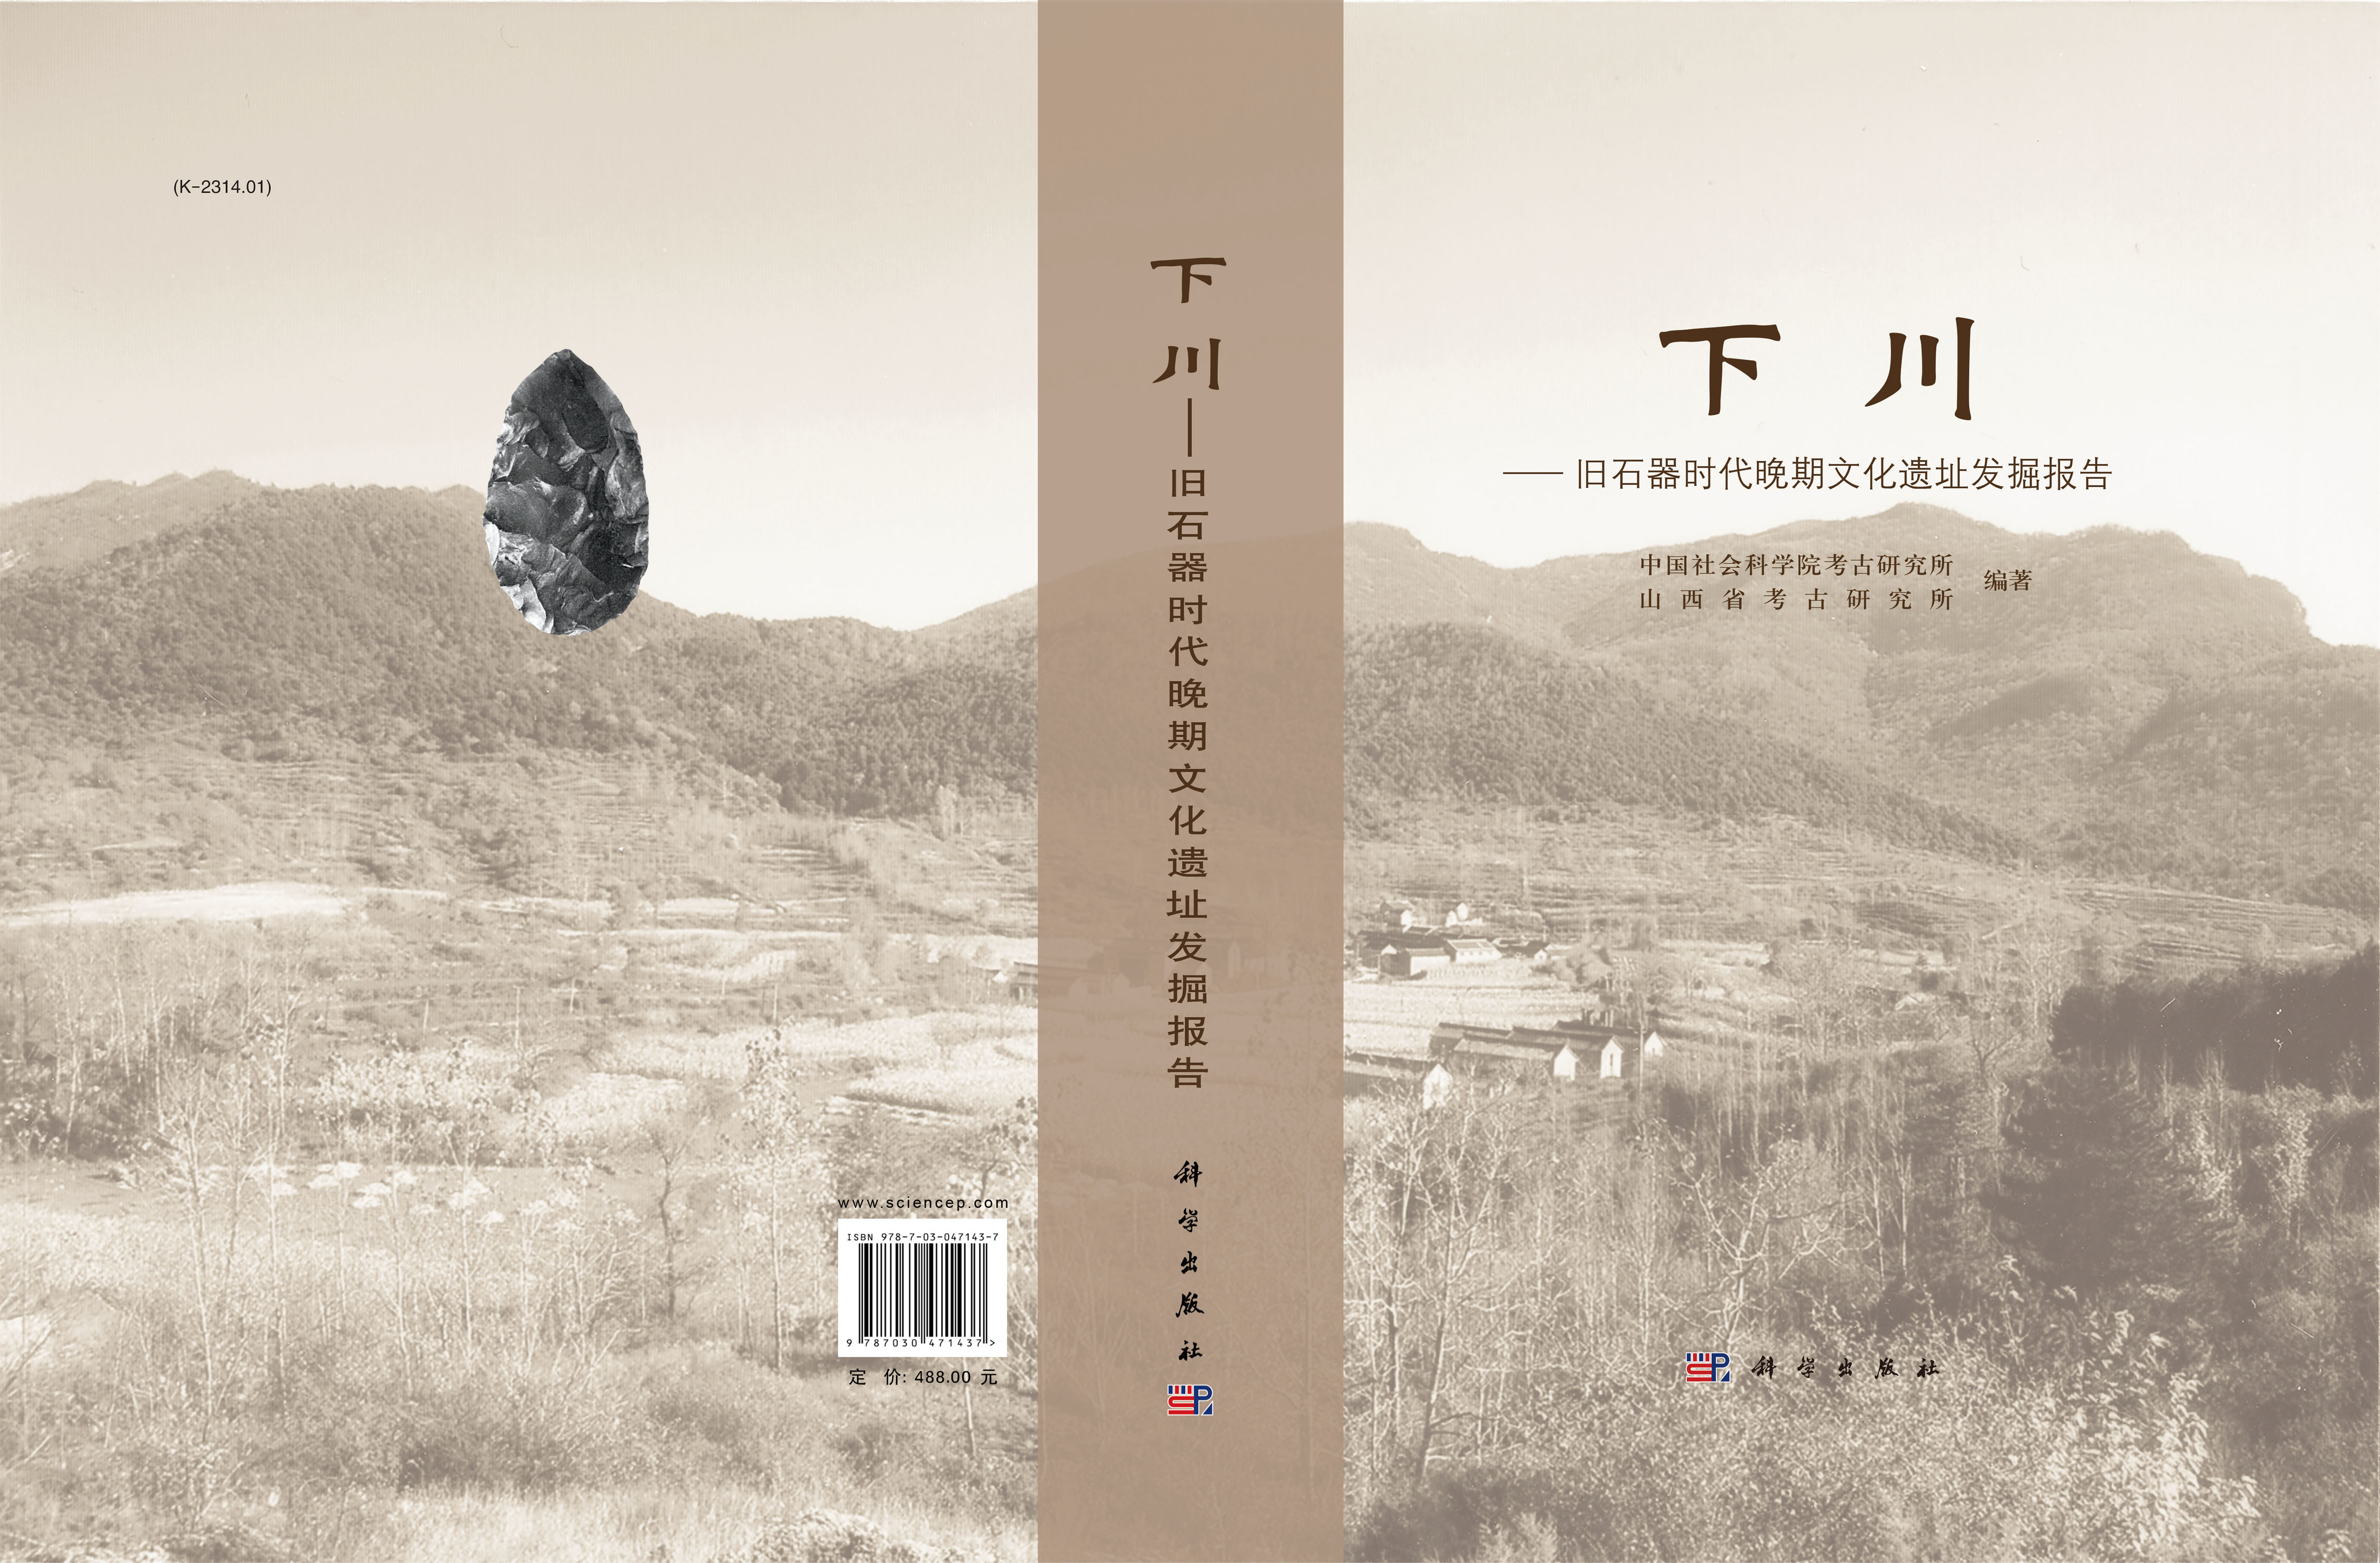 下川——旧石器时代晚期文化遗址发掘报告